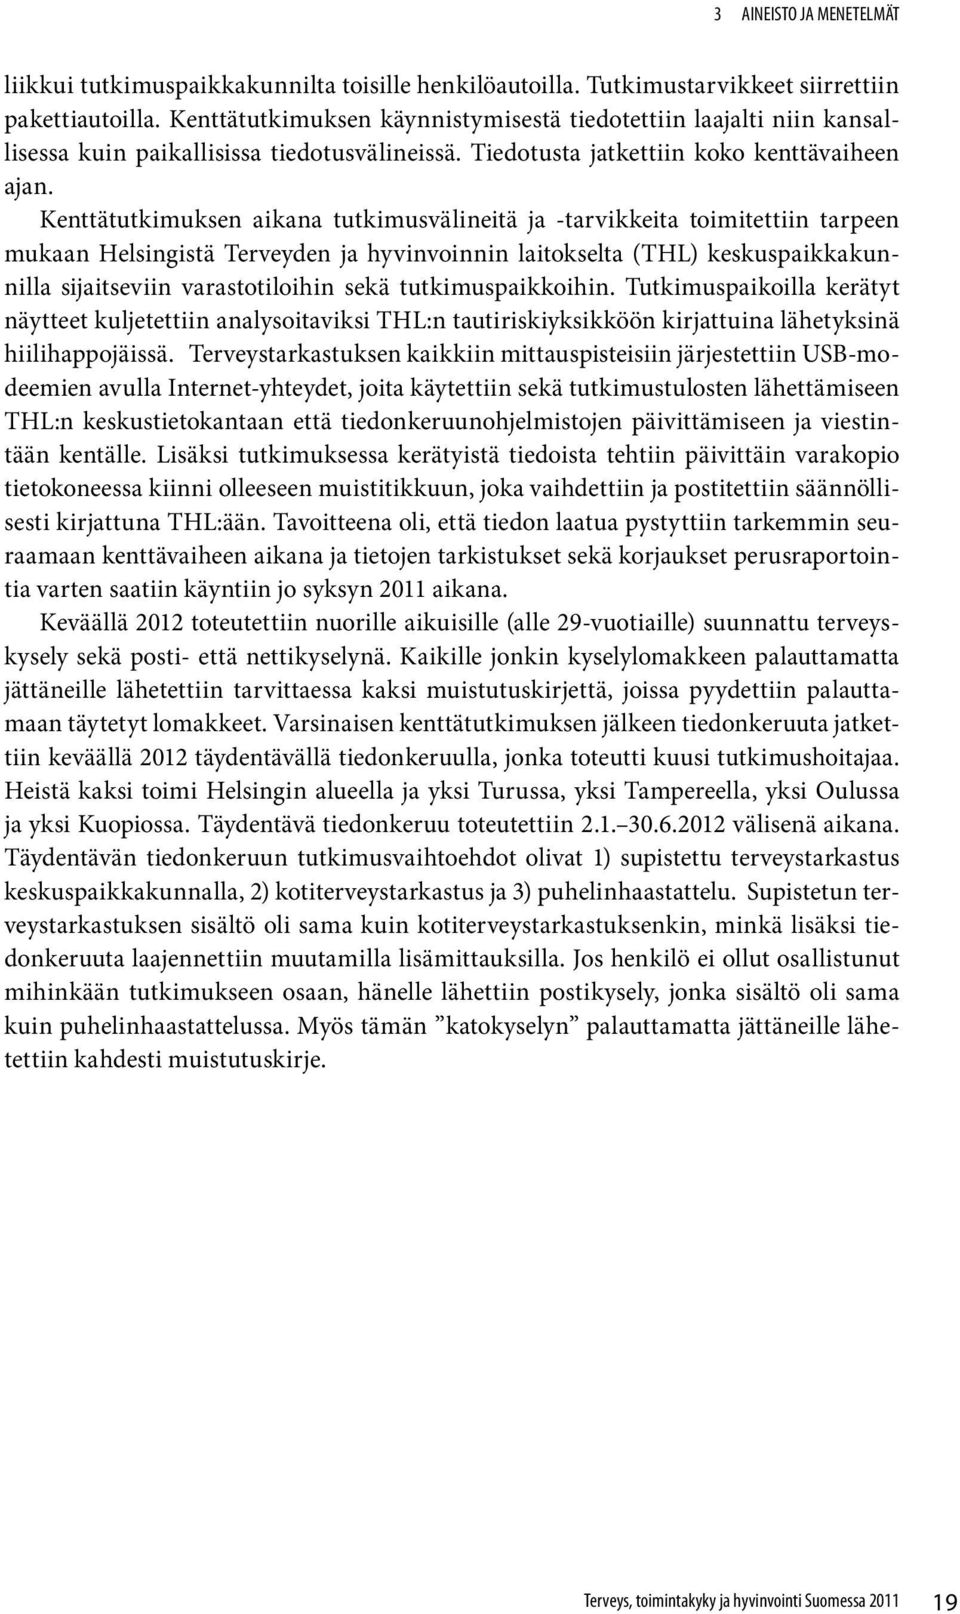 Kenttätutkimuksen aikana tutkimusvälineitä ja -tarvikkeita toimitettiin tarpeen mukaan Helsingistä Terveyden ja hyvinvoinnin laitokselta (THL) keskuspaikkakunnilla sijaitseviin varastotiloihin sekä